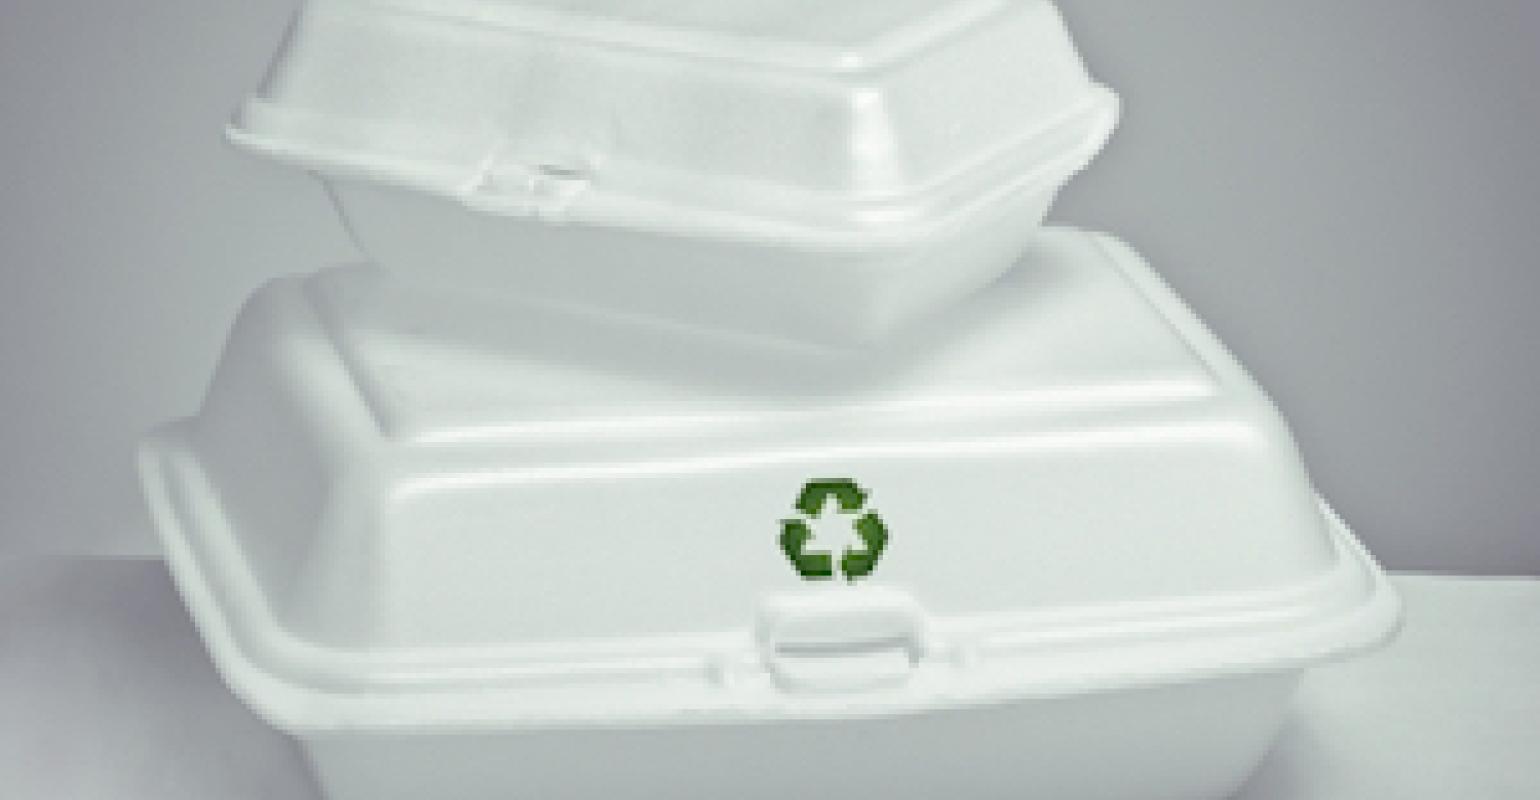 Verbraucher können sich auf die Sicherheit von Lebensmittelverpackungen aus Polystyrol verlassen